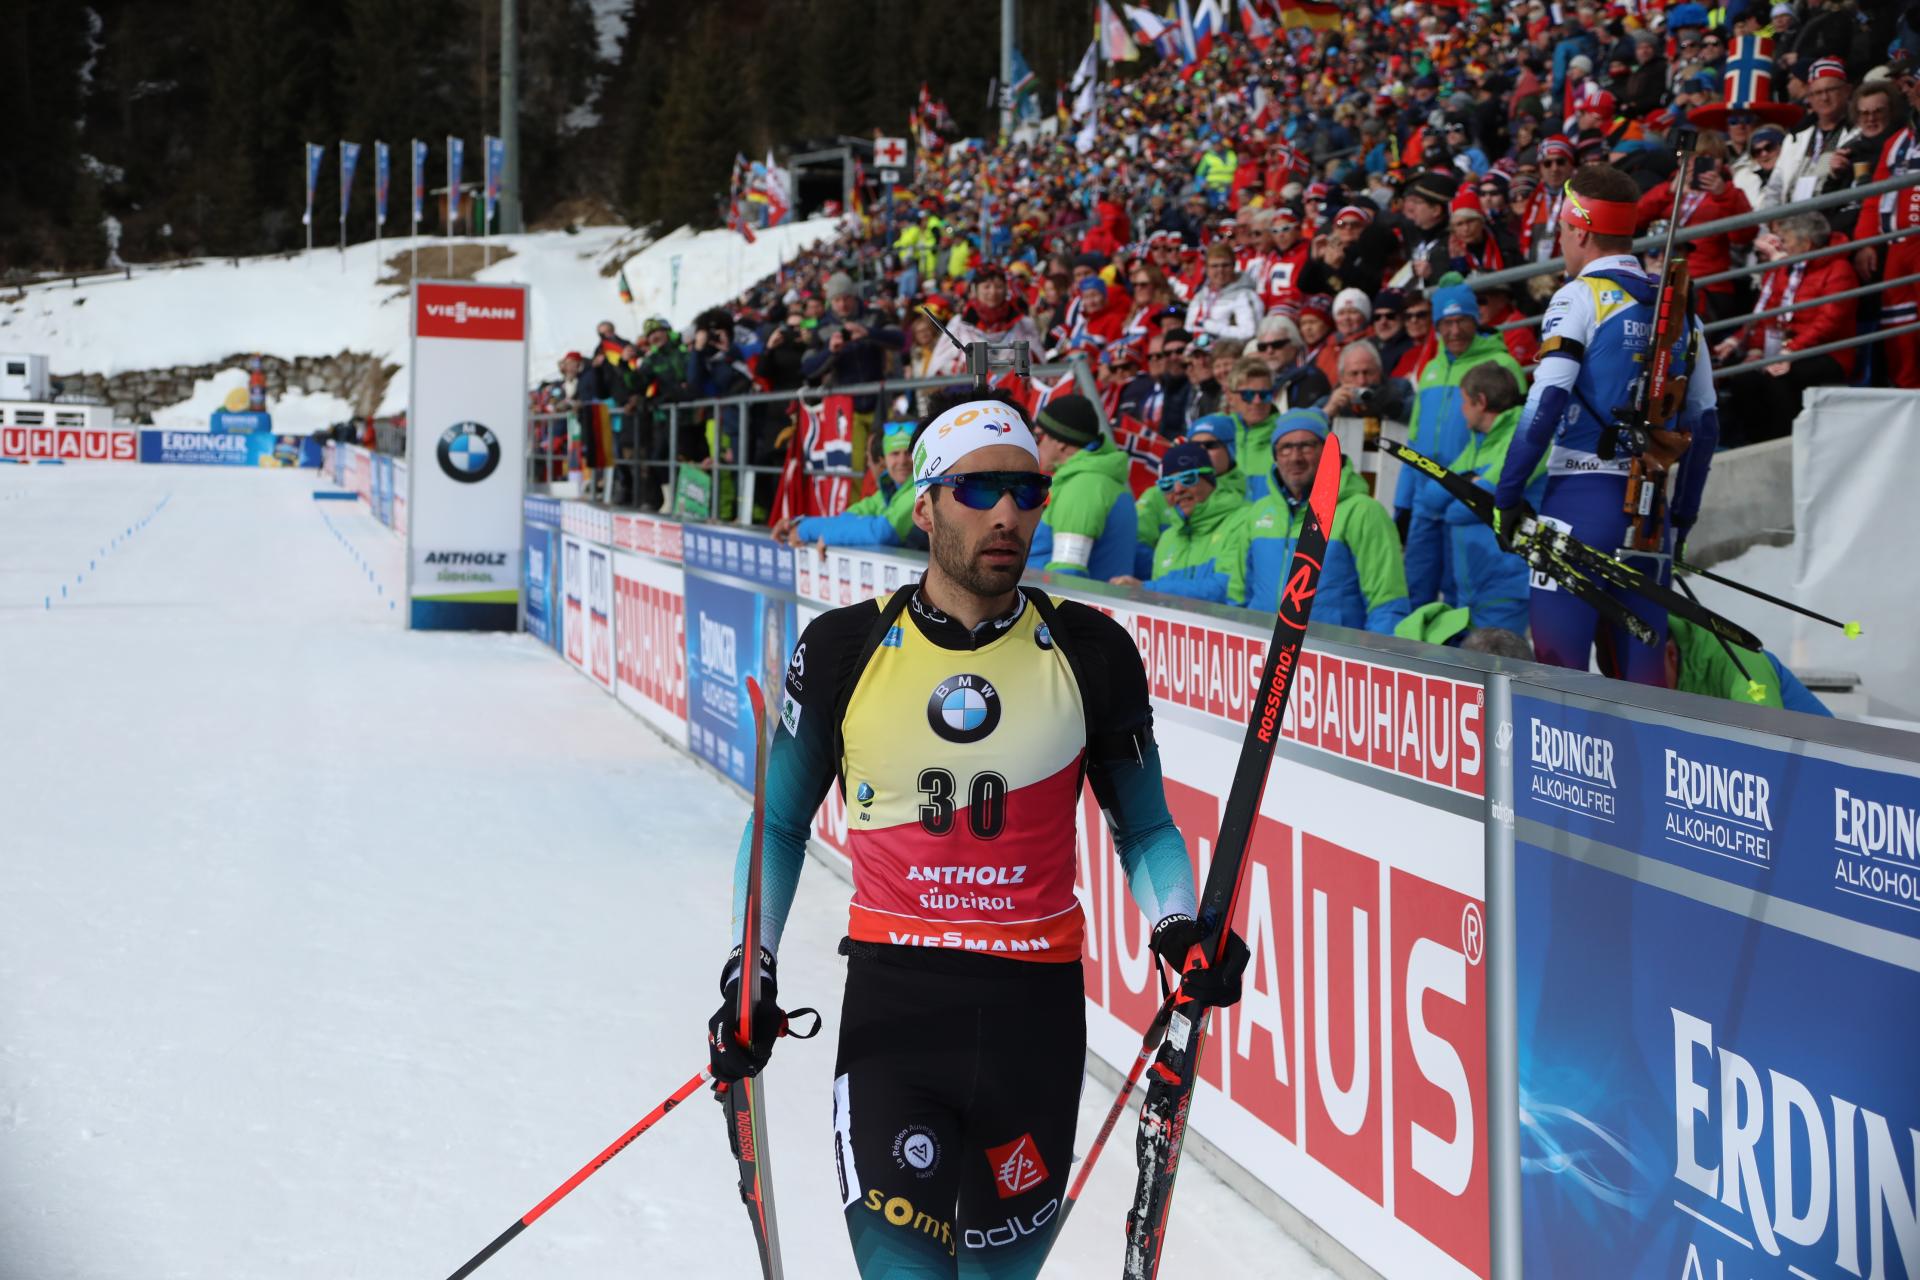 Bild: Martin Fourcade grüßt als neuer Biathlon Einzelweltmeister von Antholz - alle Bilder: Joachim Hahne / johapress 